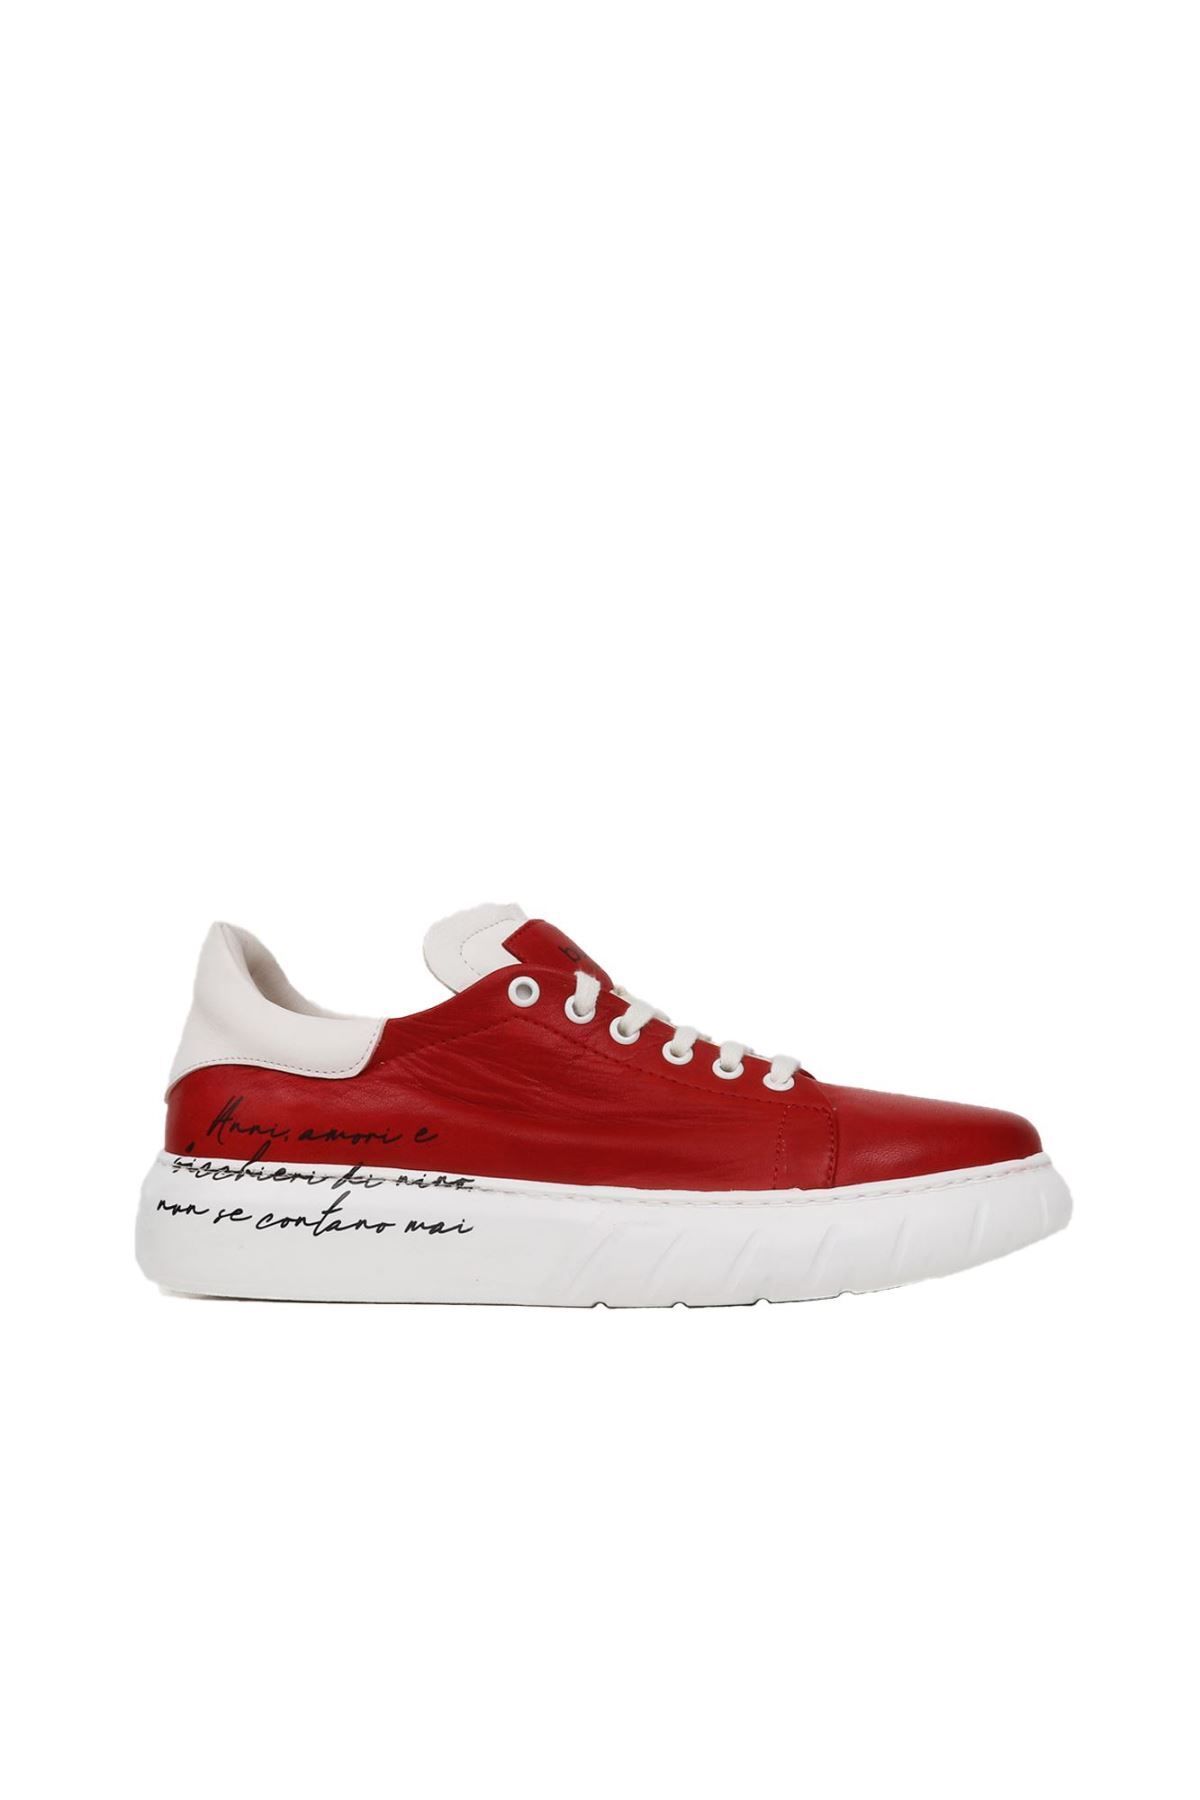 BUENO Shoes Kırmızı B92c01 Erkek Spor Ayakkabı